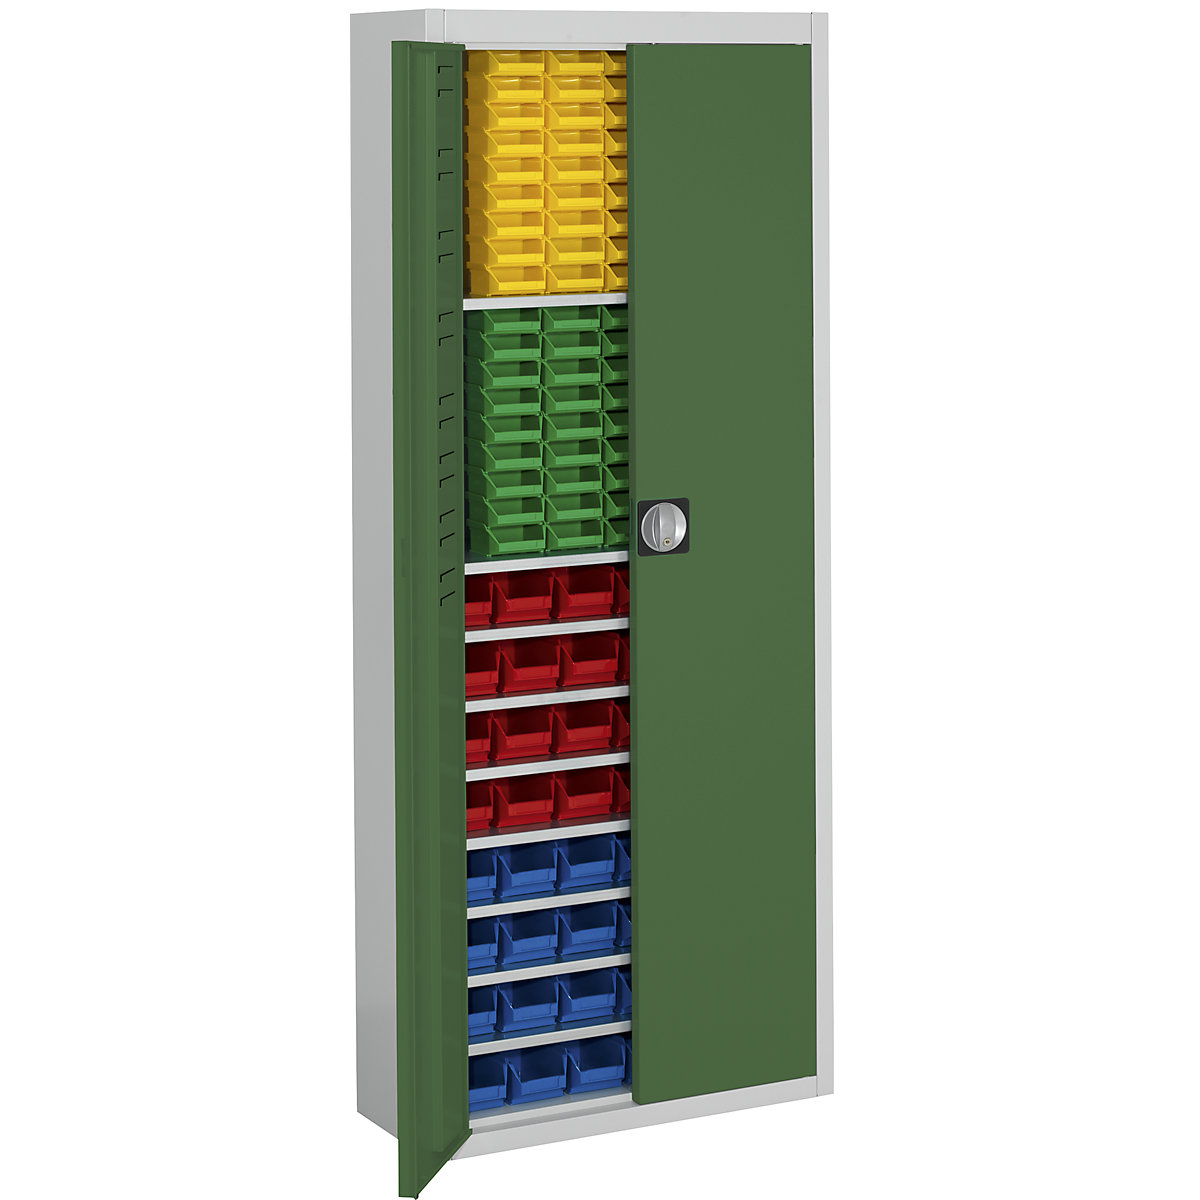 Magazijnkast met magazijnbakken – mauser, h x b x d = 1740 x 680 x 280 mm, tweekleurig, kastframe grijs, deuren groen, 138 bakken-9